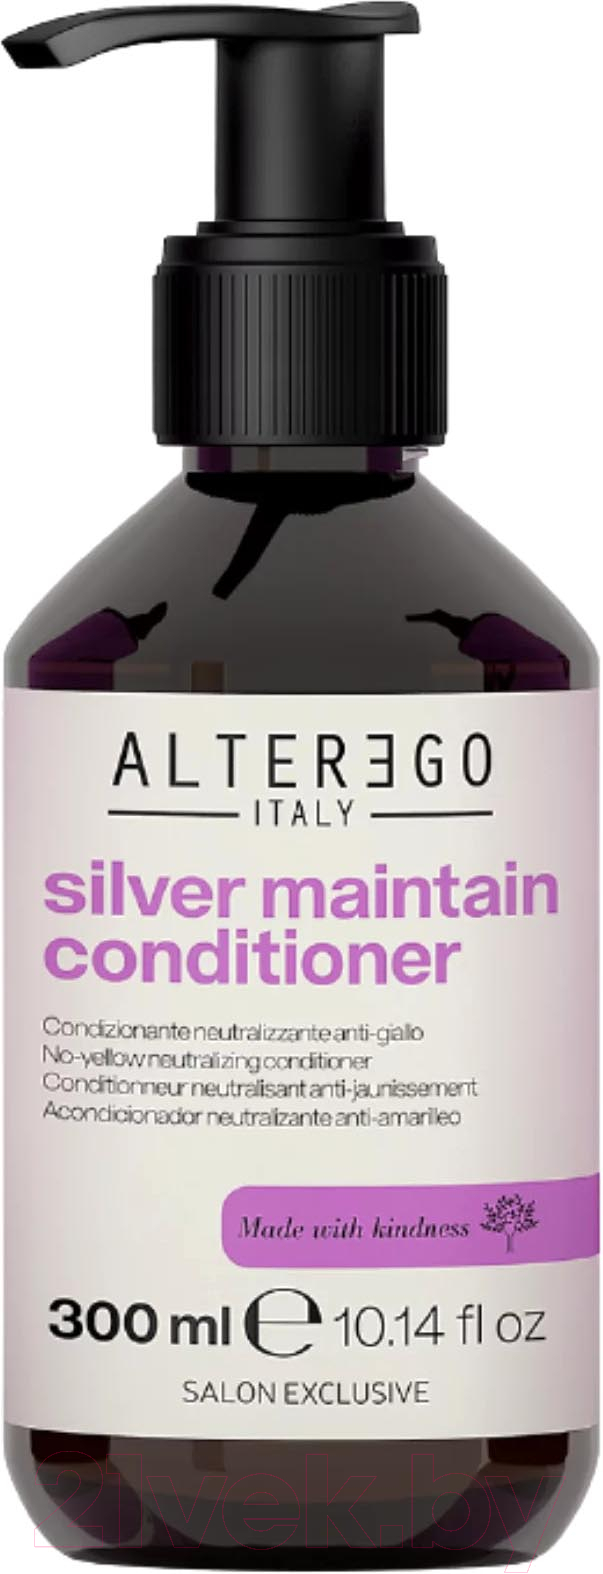 Тонирующий кондиционер для волос Alter Ego Italy Silver Maintain Conditioner Для устранения желтизны волос